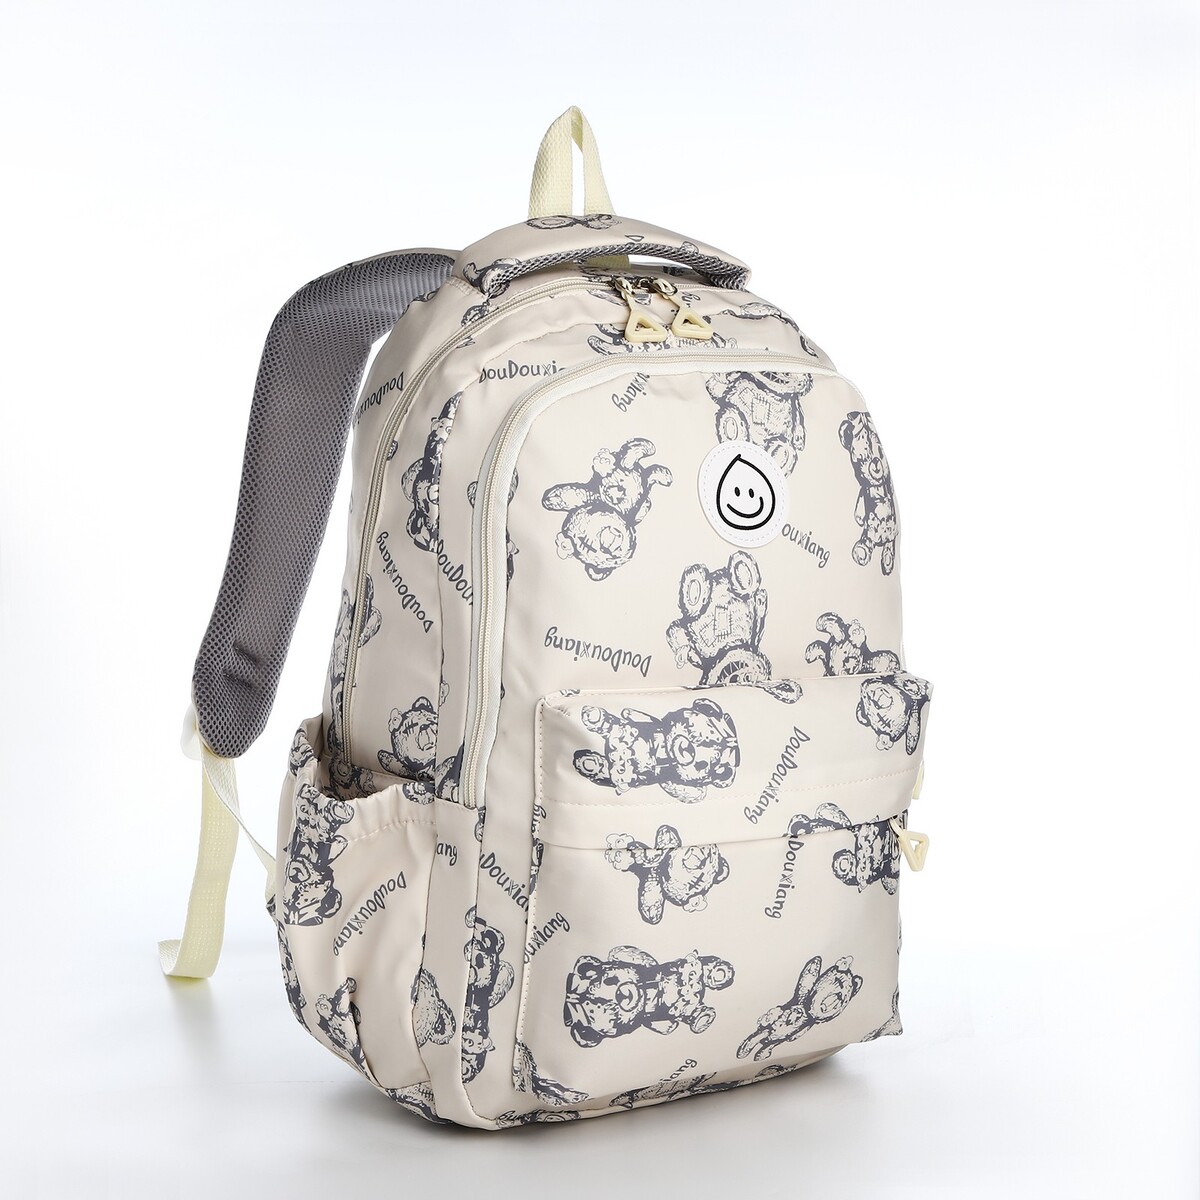 Рюкзак школьный из текстиля на молнии, 4 кармана, цвет бежевый рюкзак молодежный из текстиля на молнии 3 кармана серо бежевый